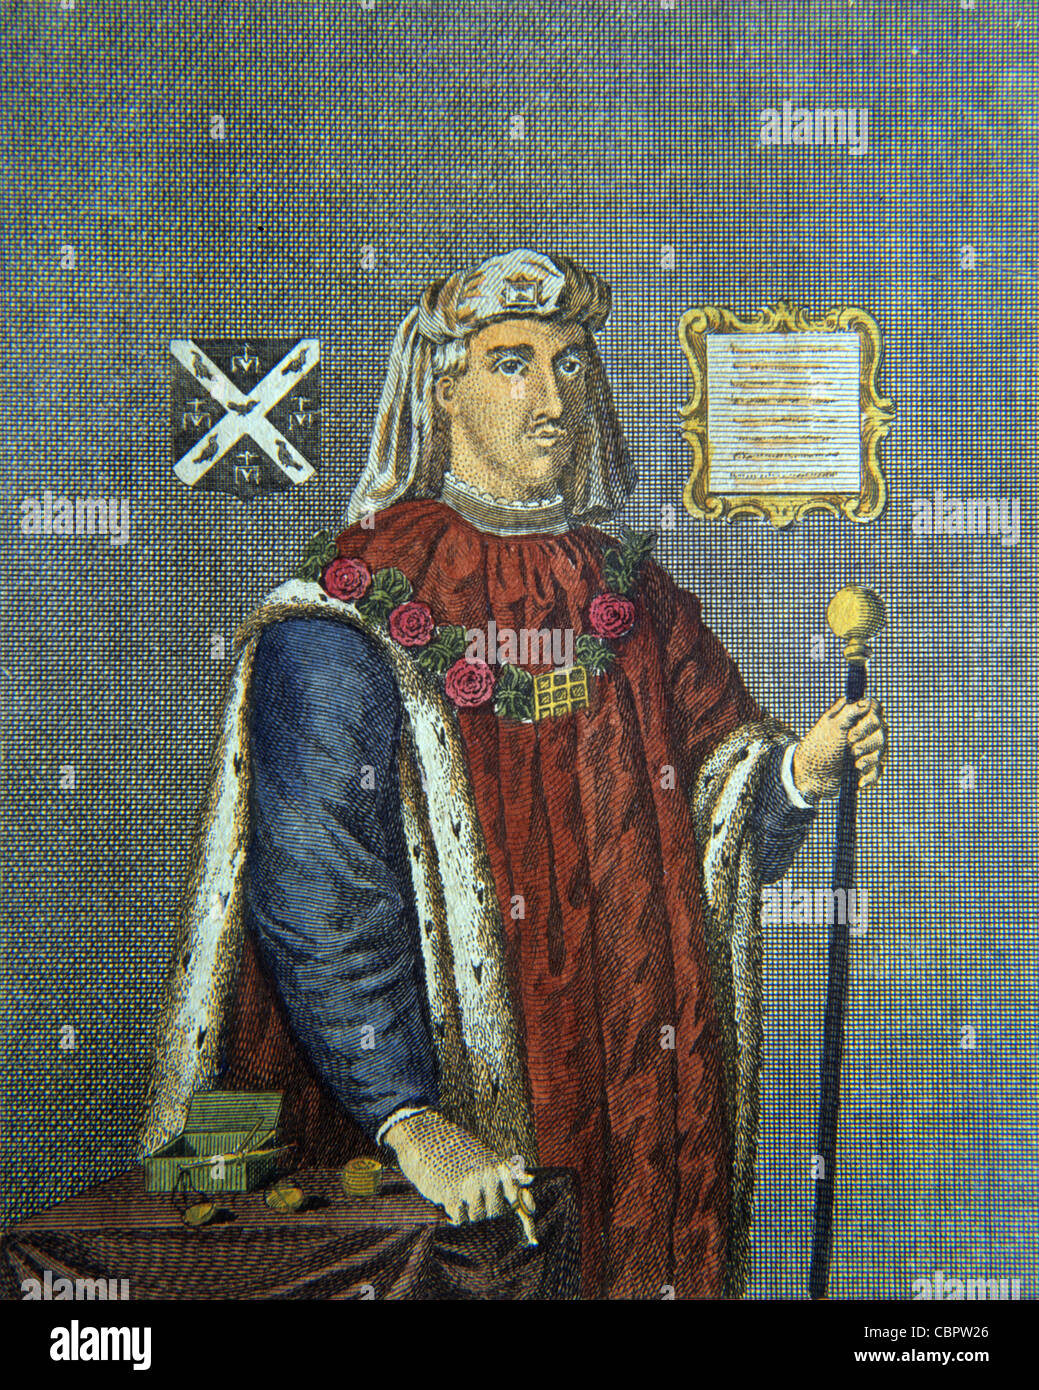 Henry Fitz Ailwin, alias Eylwin, Fitz-Ailwyn ou Fitz-Ailwin, Maire du premier Seigneur de Londres (Maire 1180-1212). Portrait habillé dans le costume du maire. Illustration ancienne ou gravure Banque D'Images